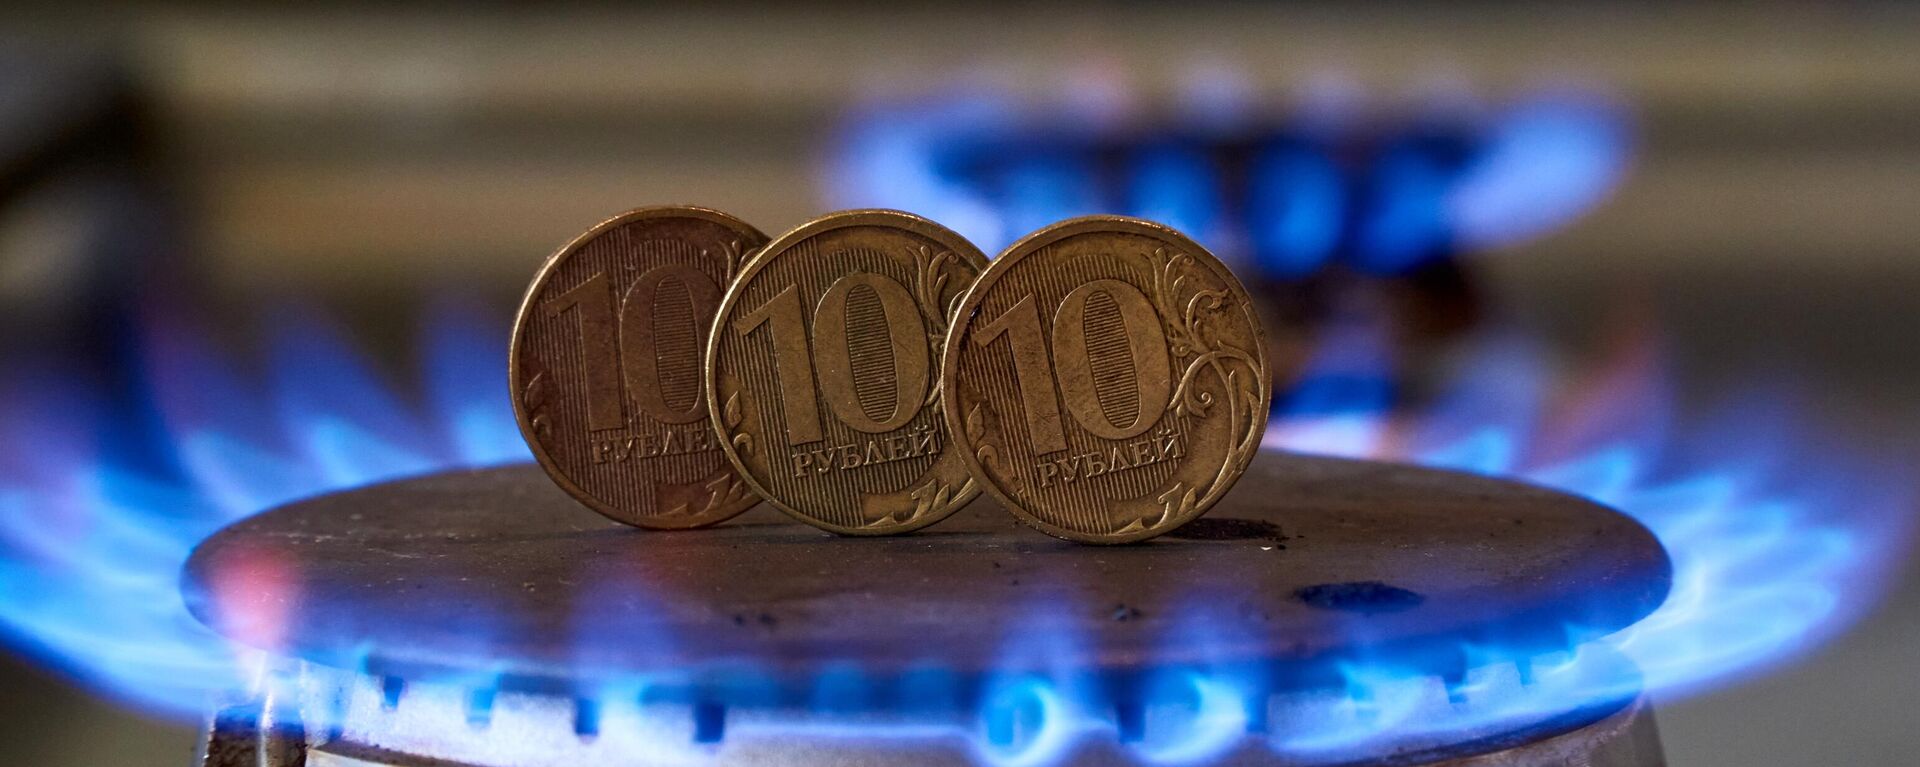 Монеты номиналам десять рублей на газовой плите - Sputnik Латвия, 1920, 04.04.2022